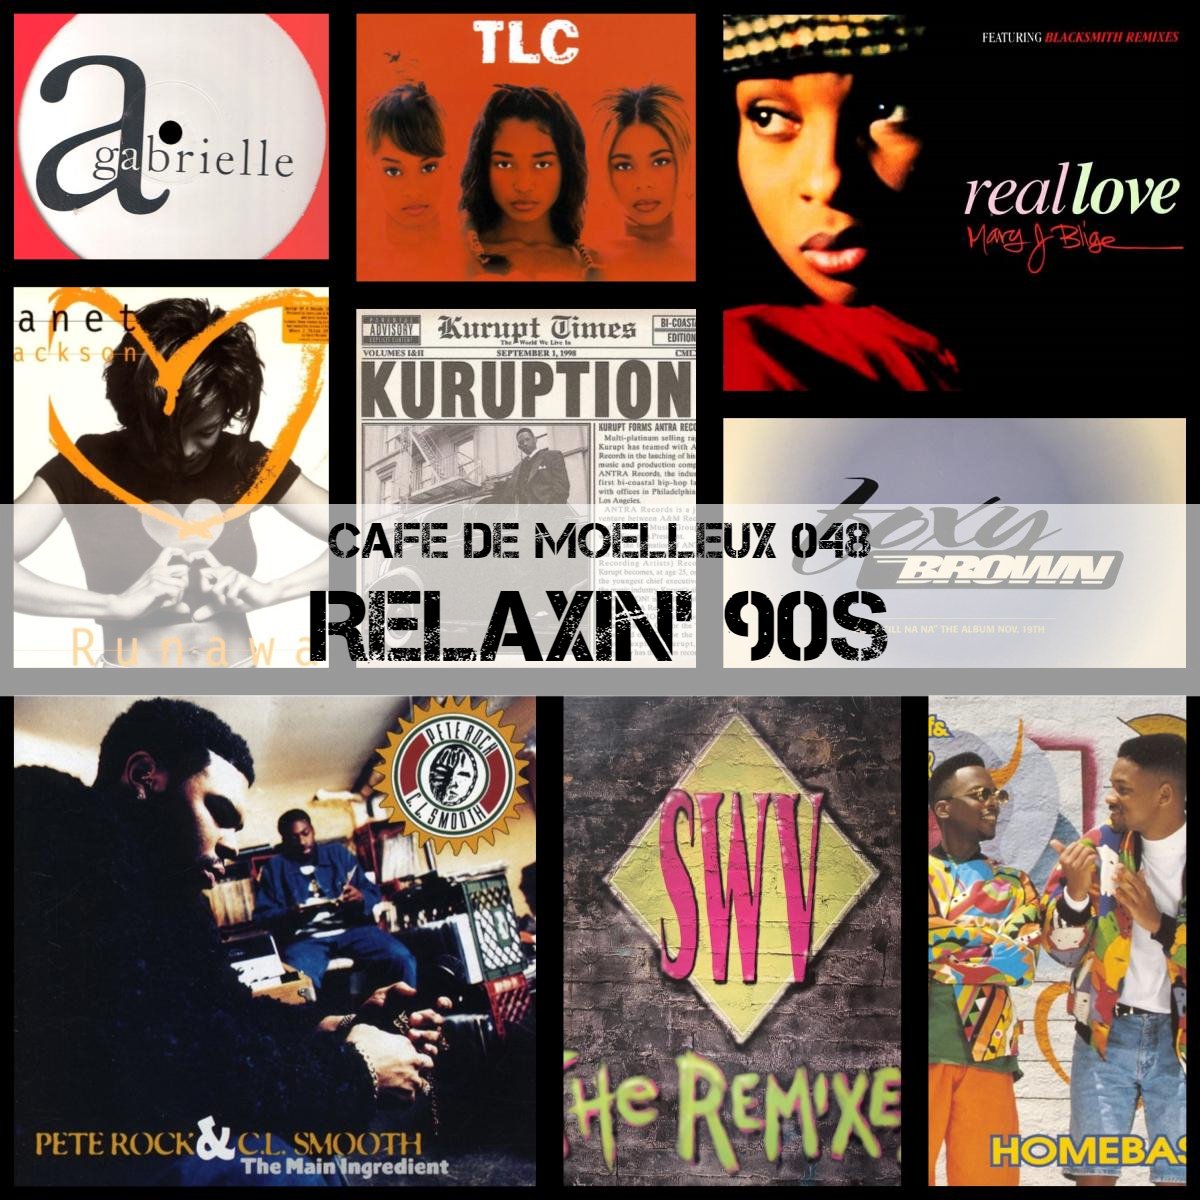 #インターネットラジオ 「THE RADIO」
the-radio.net

cafe de moelleuxを更新！
テーマは【relaxin' 90s】

90年代RNBとヒップホップを代表する名曲がてんこ盛り！

春から初夏へと向かうこの1か月、ミックス仕立ての28分でゆったりとした時間をお過ごしください。

​#djmix 

2024.5.2